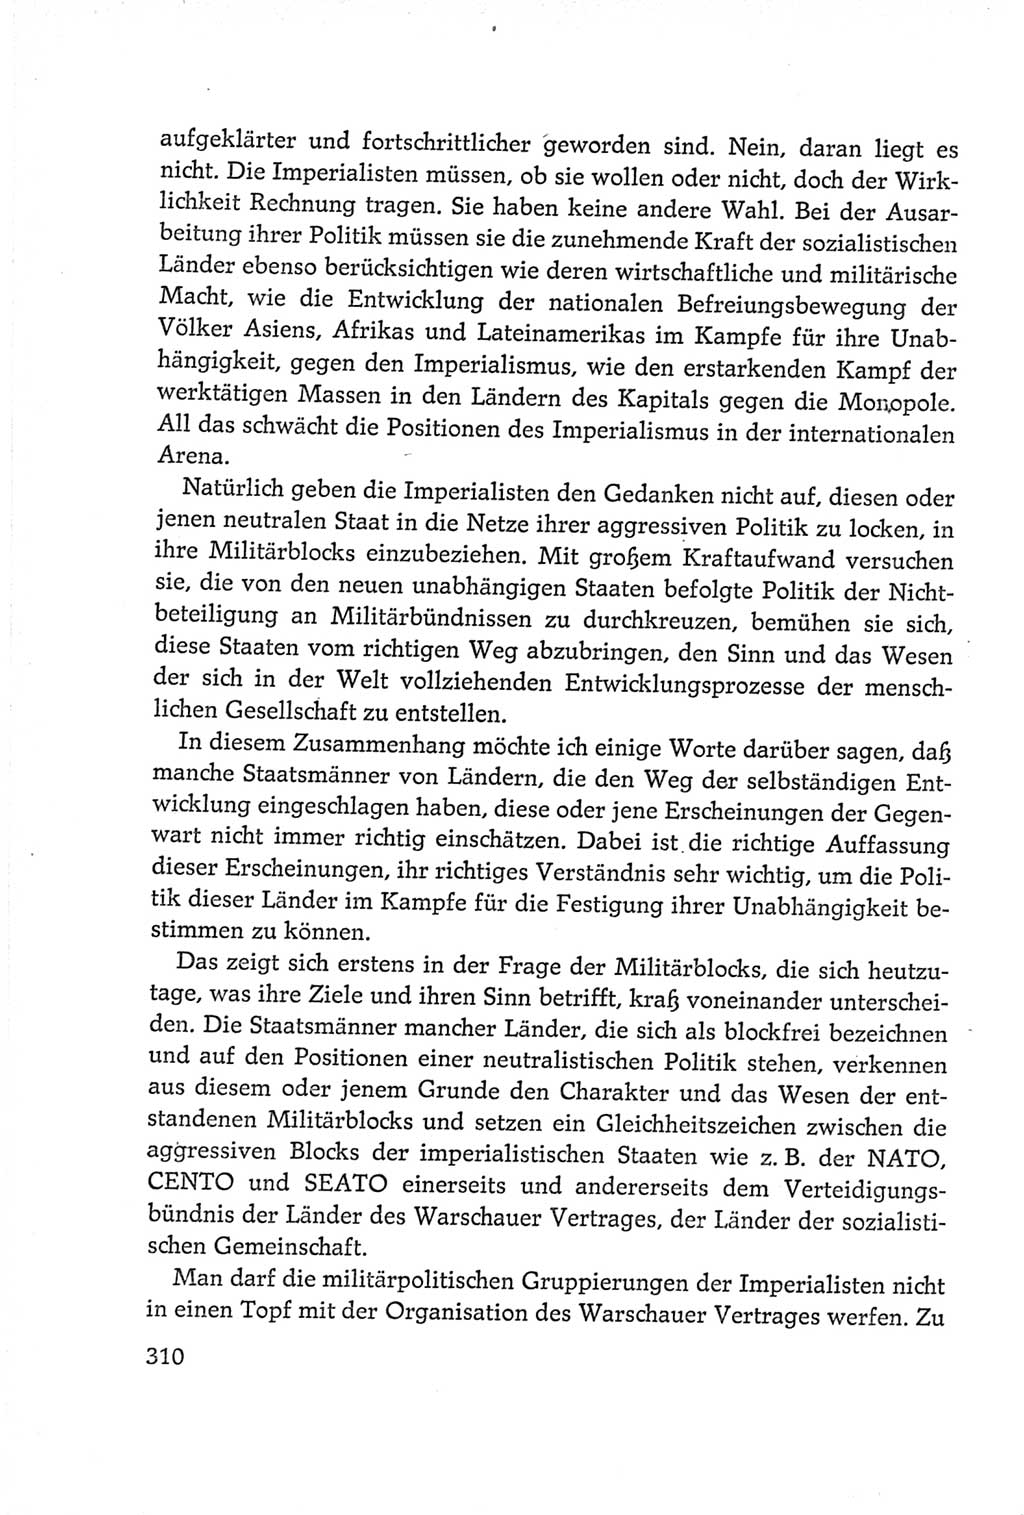 Protokoll der Verhandlungen des Ⅵ. Parteitages der Sozialistischen Einheitspartei Deutschlands (SED) [Deutsche Demokratische Republik (DDR)] 1963, Band Ⅰ, Seite 310 (Prot. Verh. Ⅵ. PT SED DDR 1963, Bd. Ⅰ, S. 310)